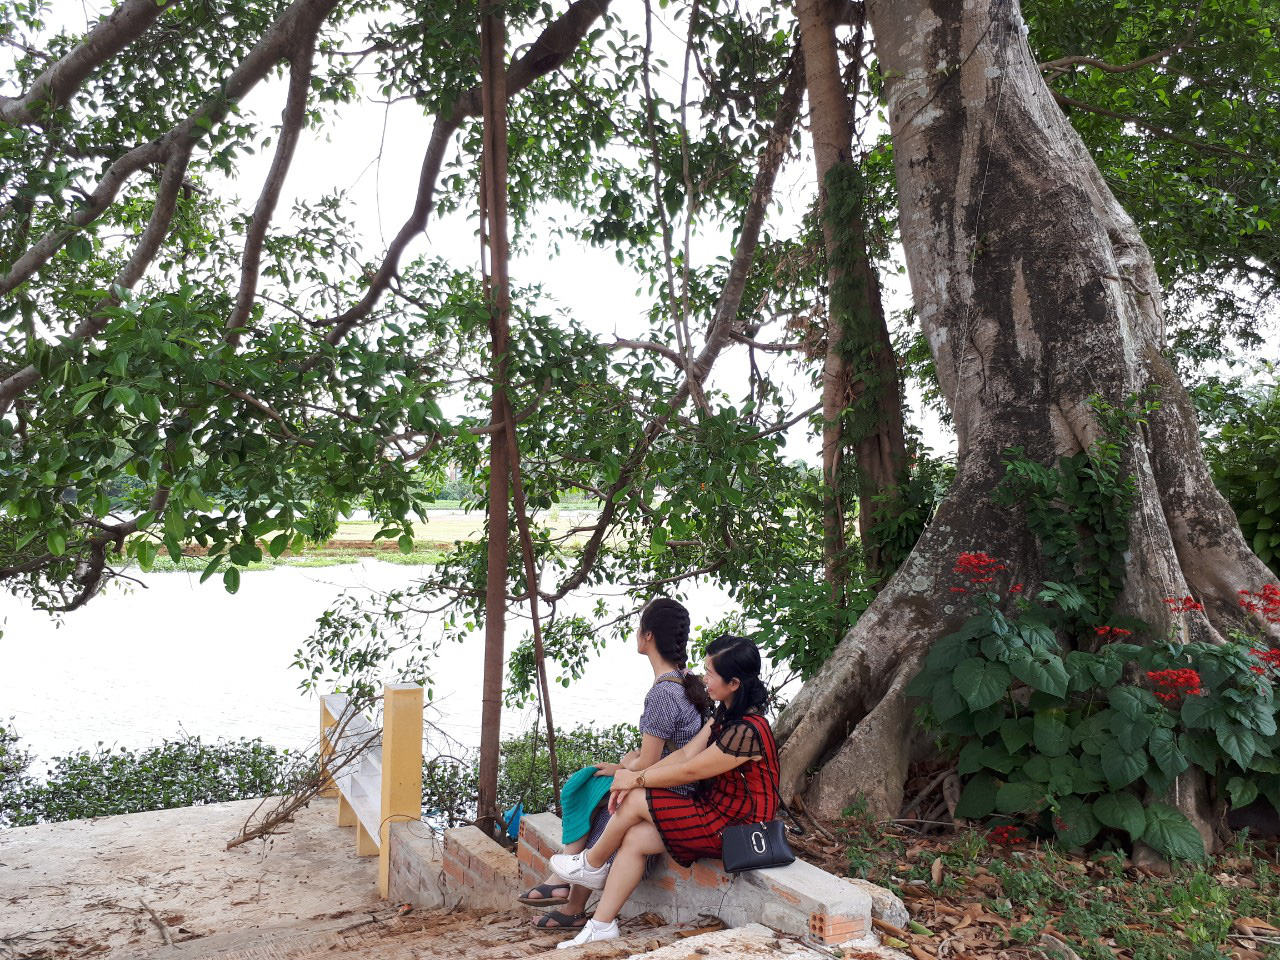 Quảng Nam: Độc đáo, rừng cừa cổ thụ toàn cây khủng giữa thành phố Tam Kỳ - Ảnh 6.